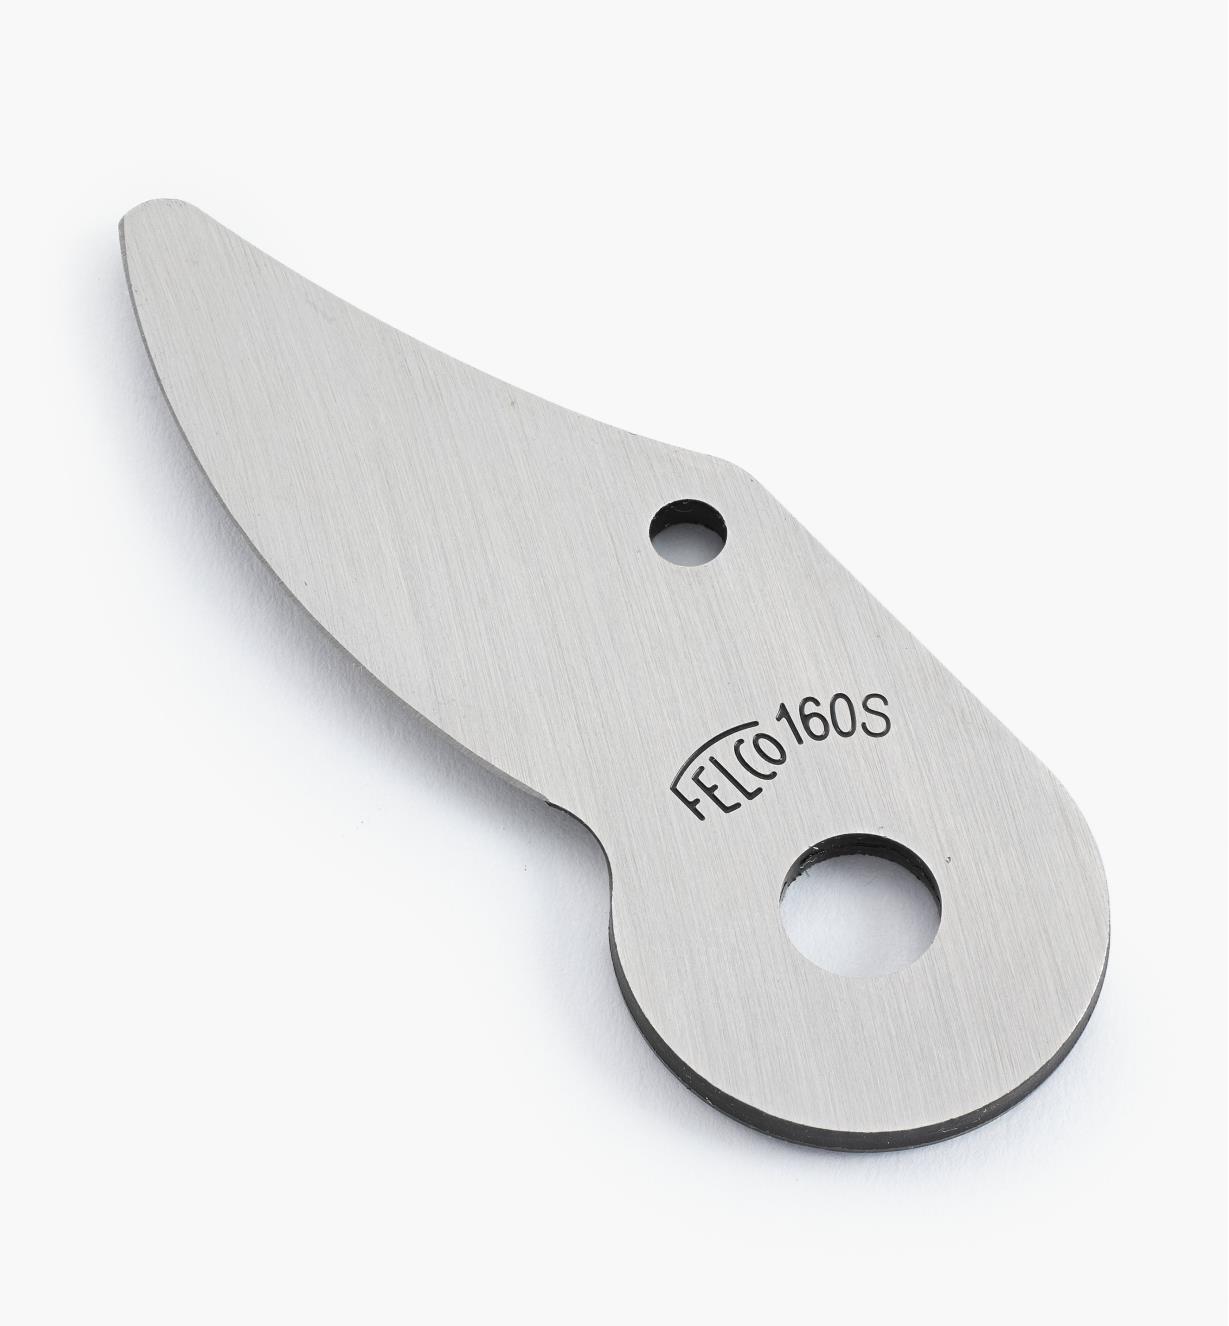 AB228 - Felco Blade for #160S Pruner